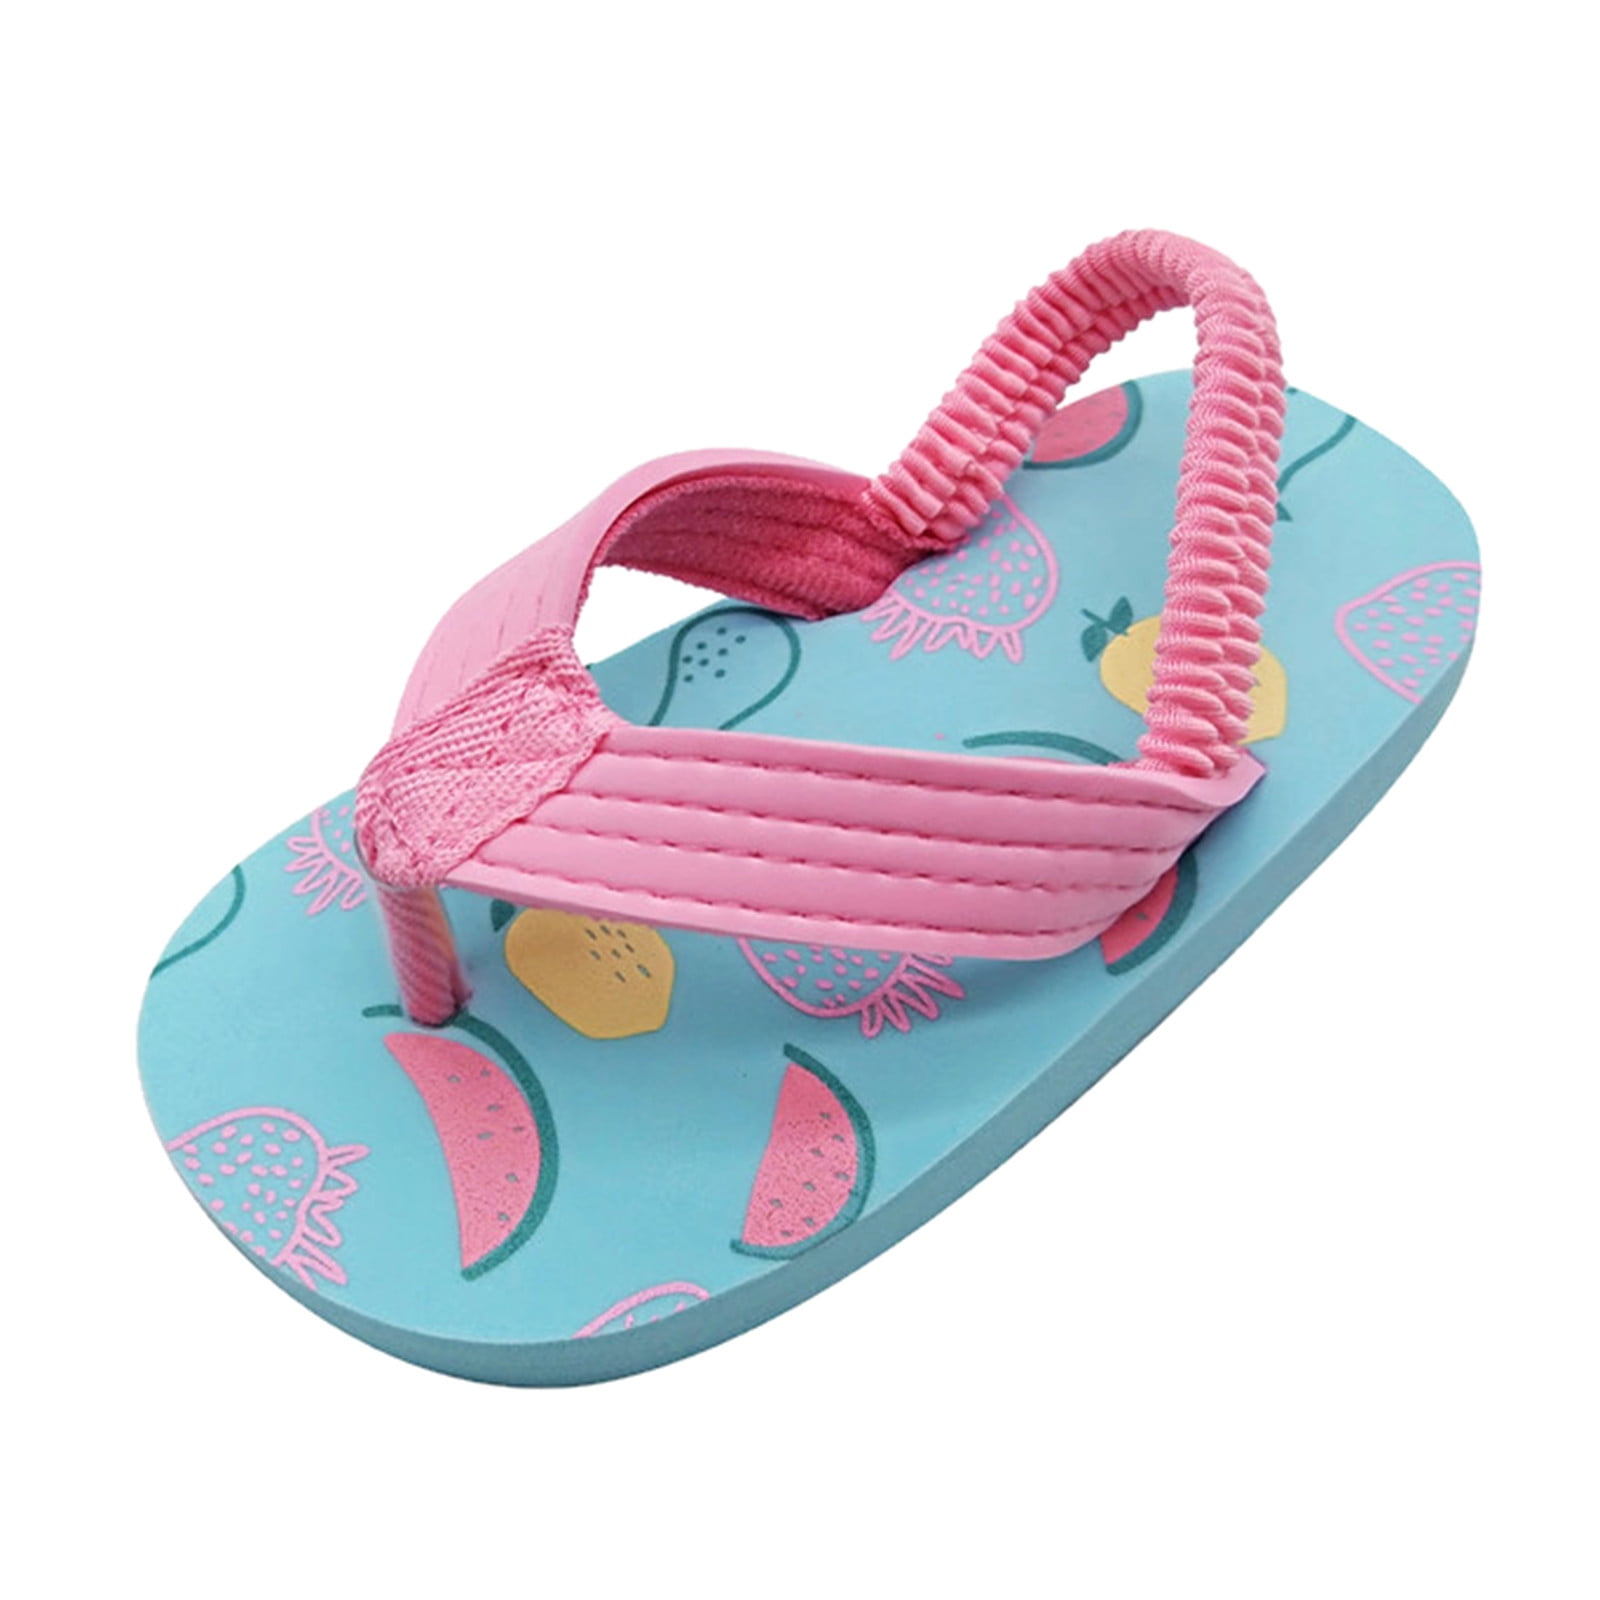 Sandals for Girls Eva Elastic Beach Strap Flopsflip for wth Adjustable ...